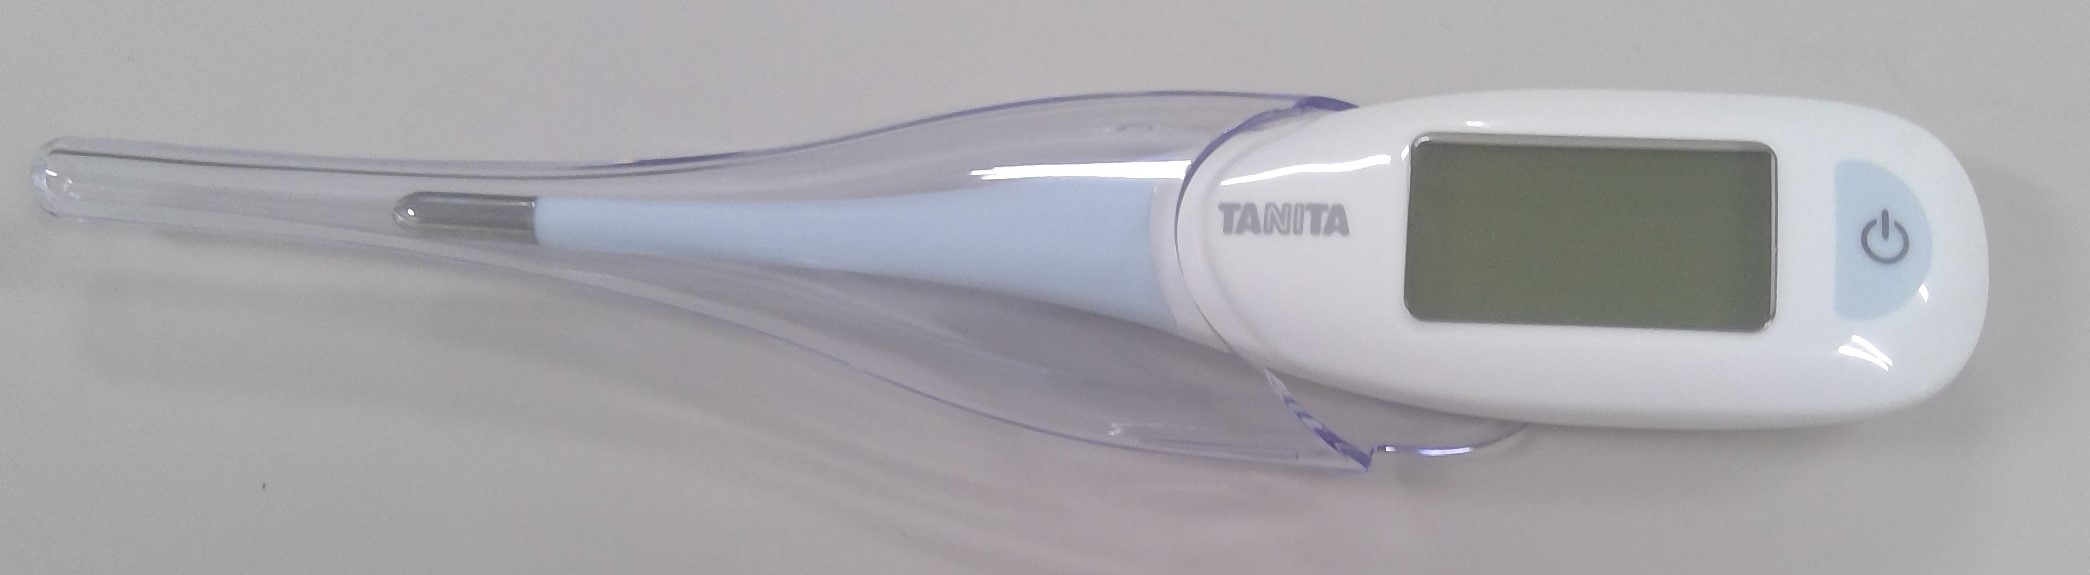 タニタ電子体温計 体温計 BT-47X タニタ TANITA - 救急